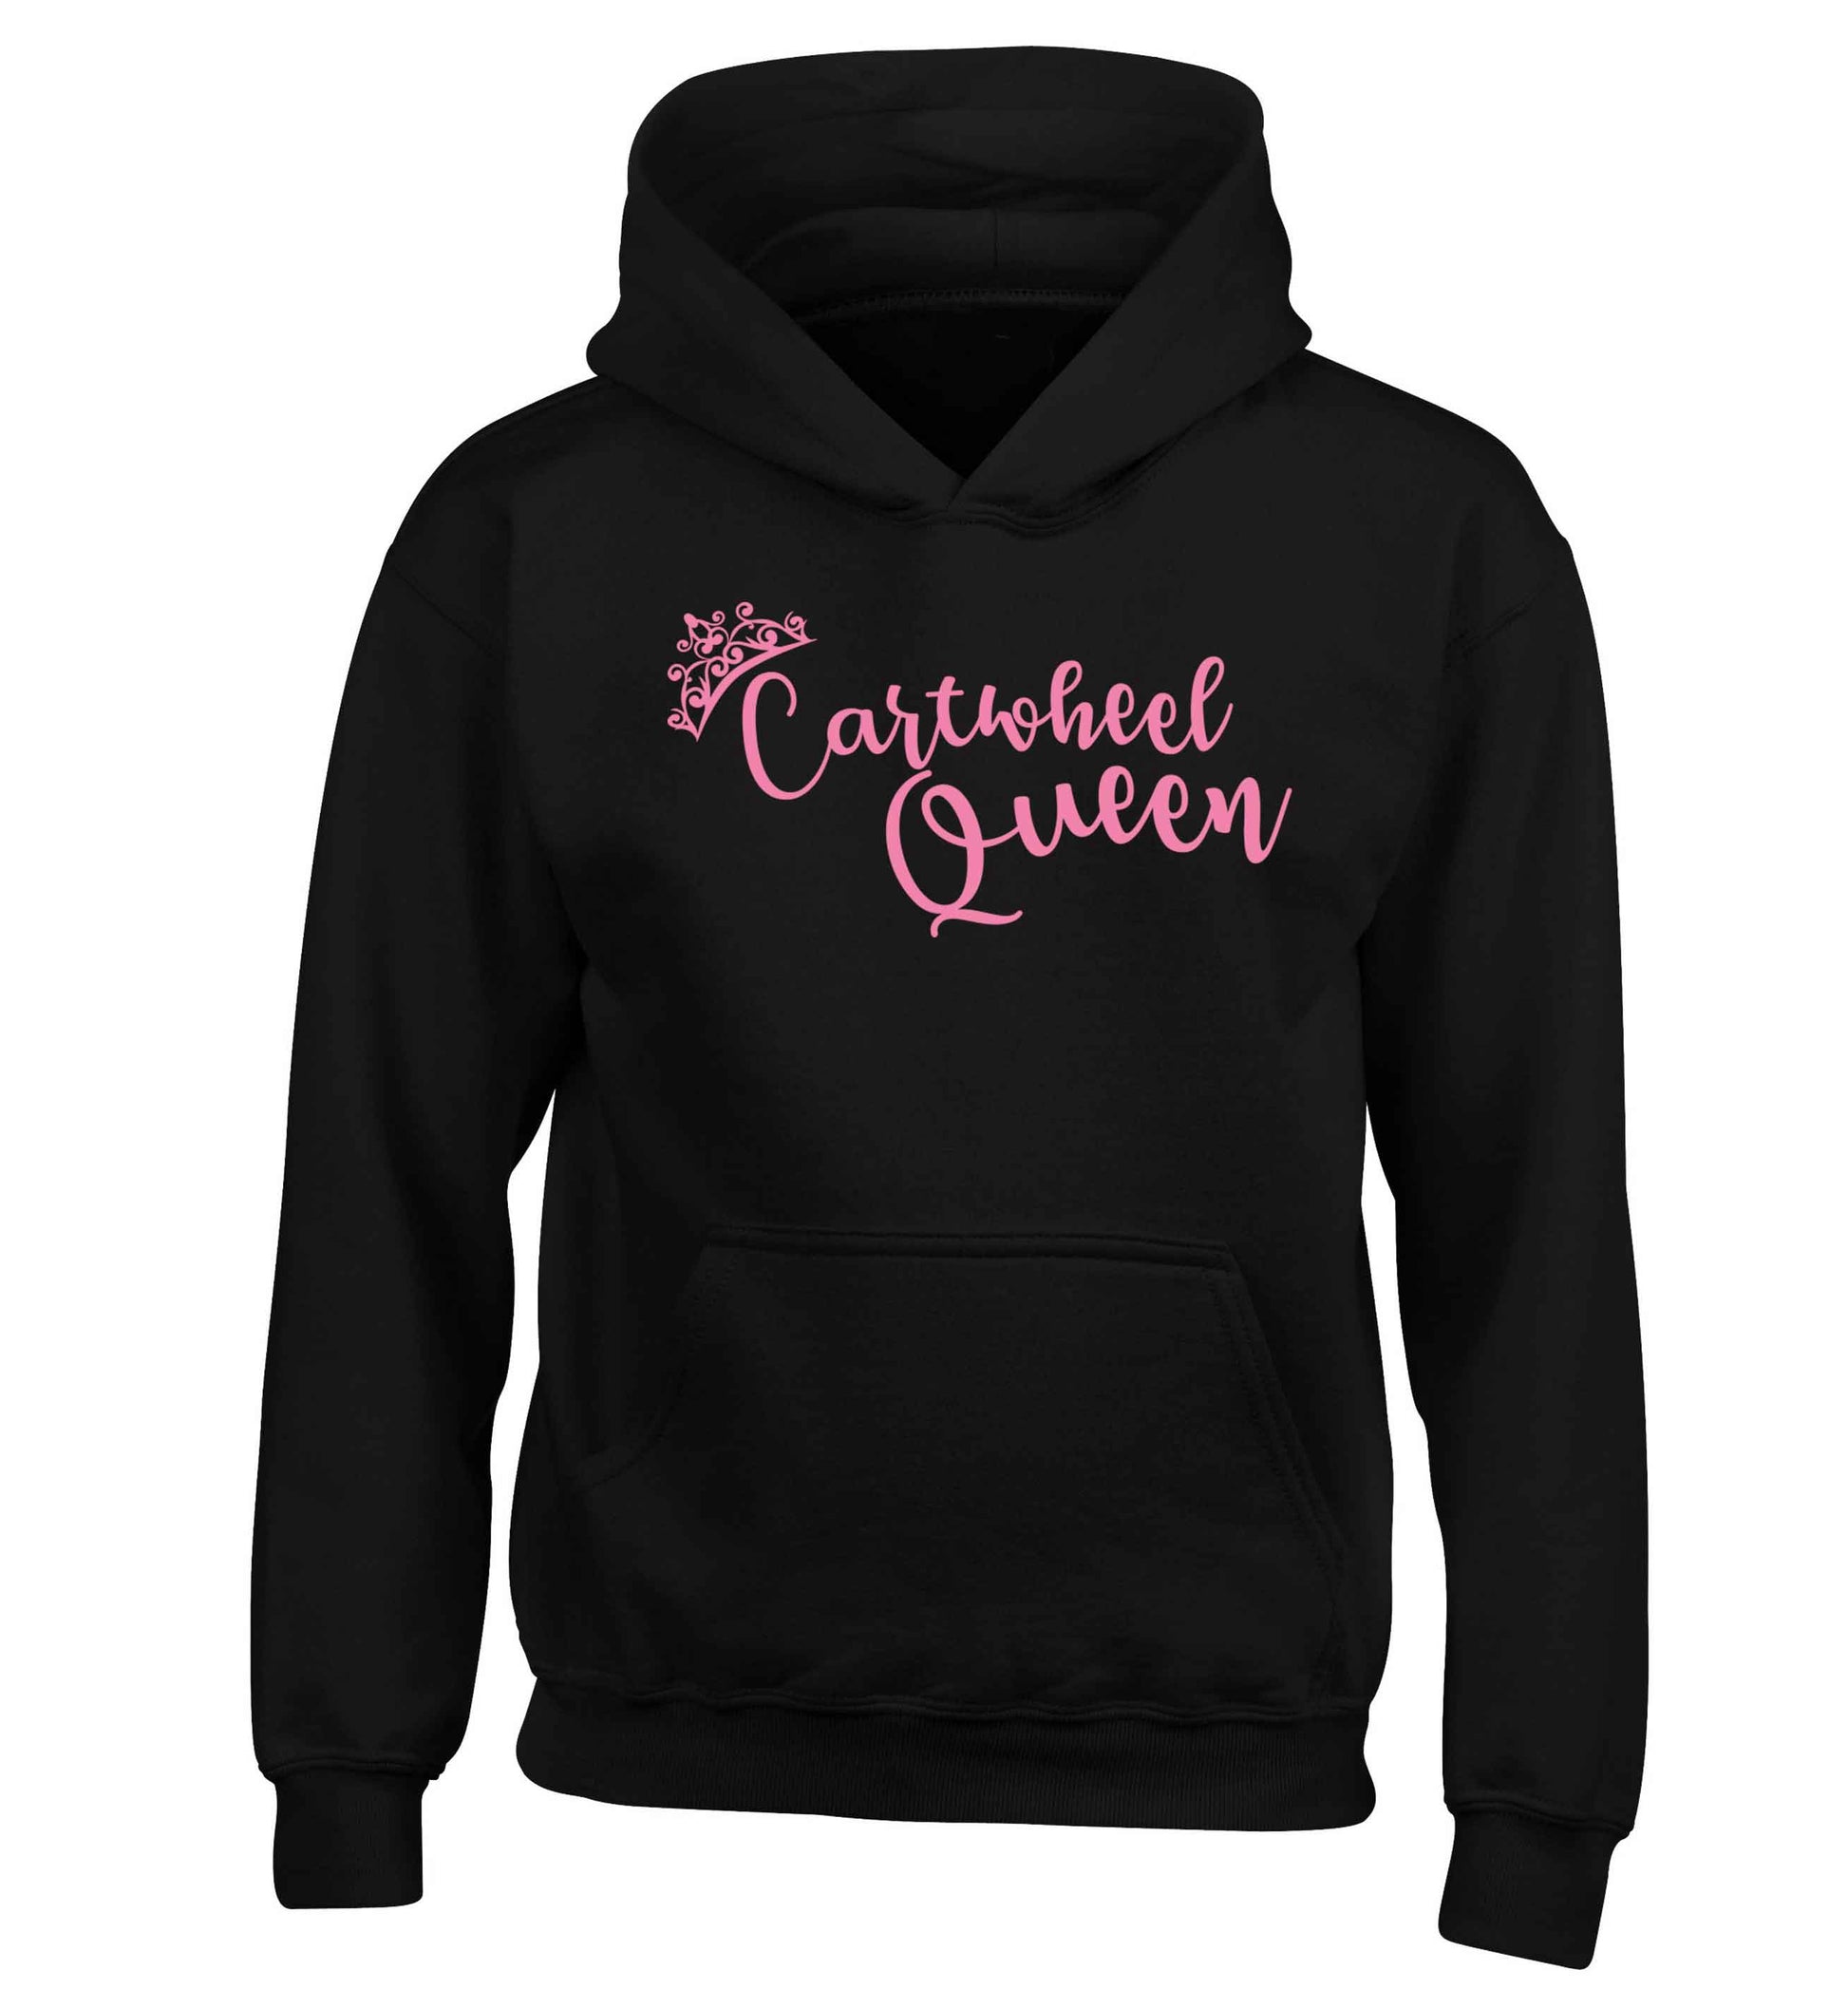 Cartwheel queen children's black hoodie 12-13 Years